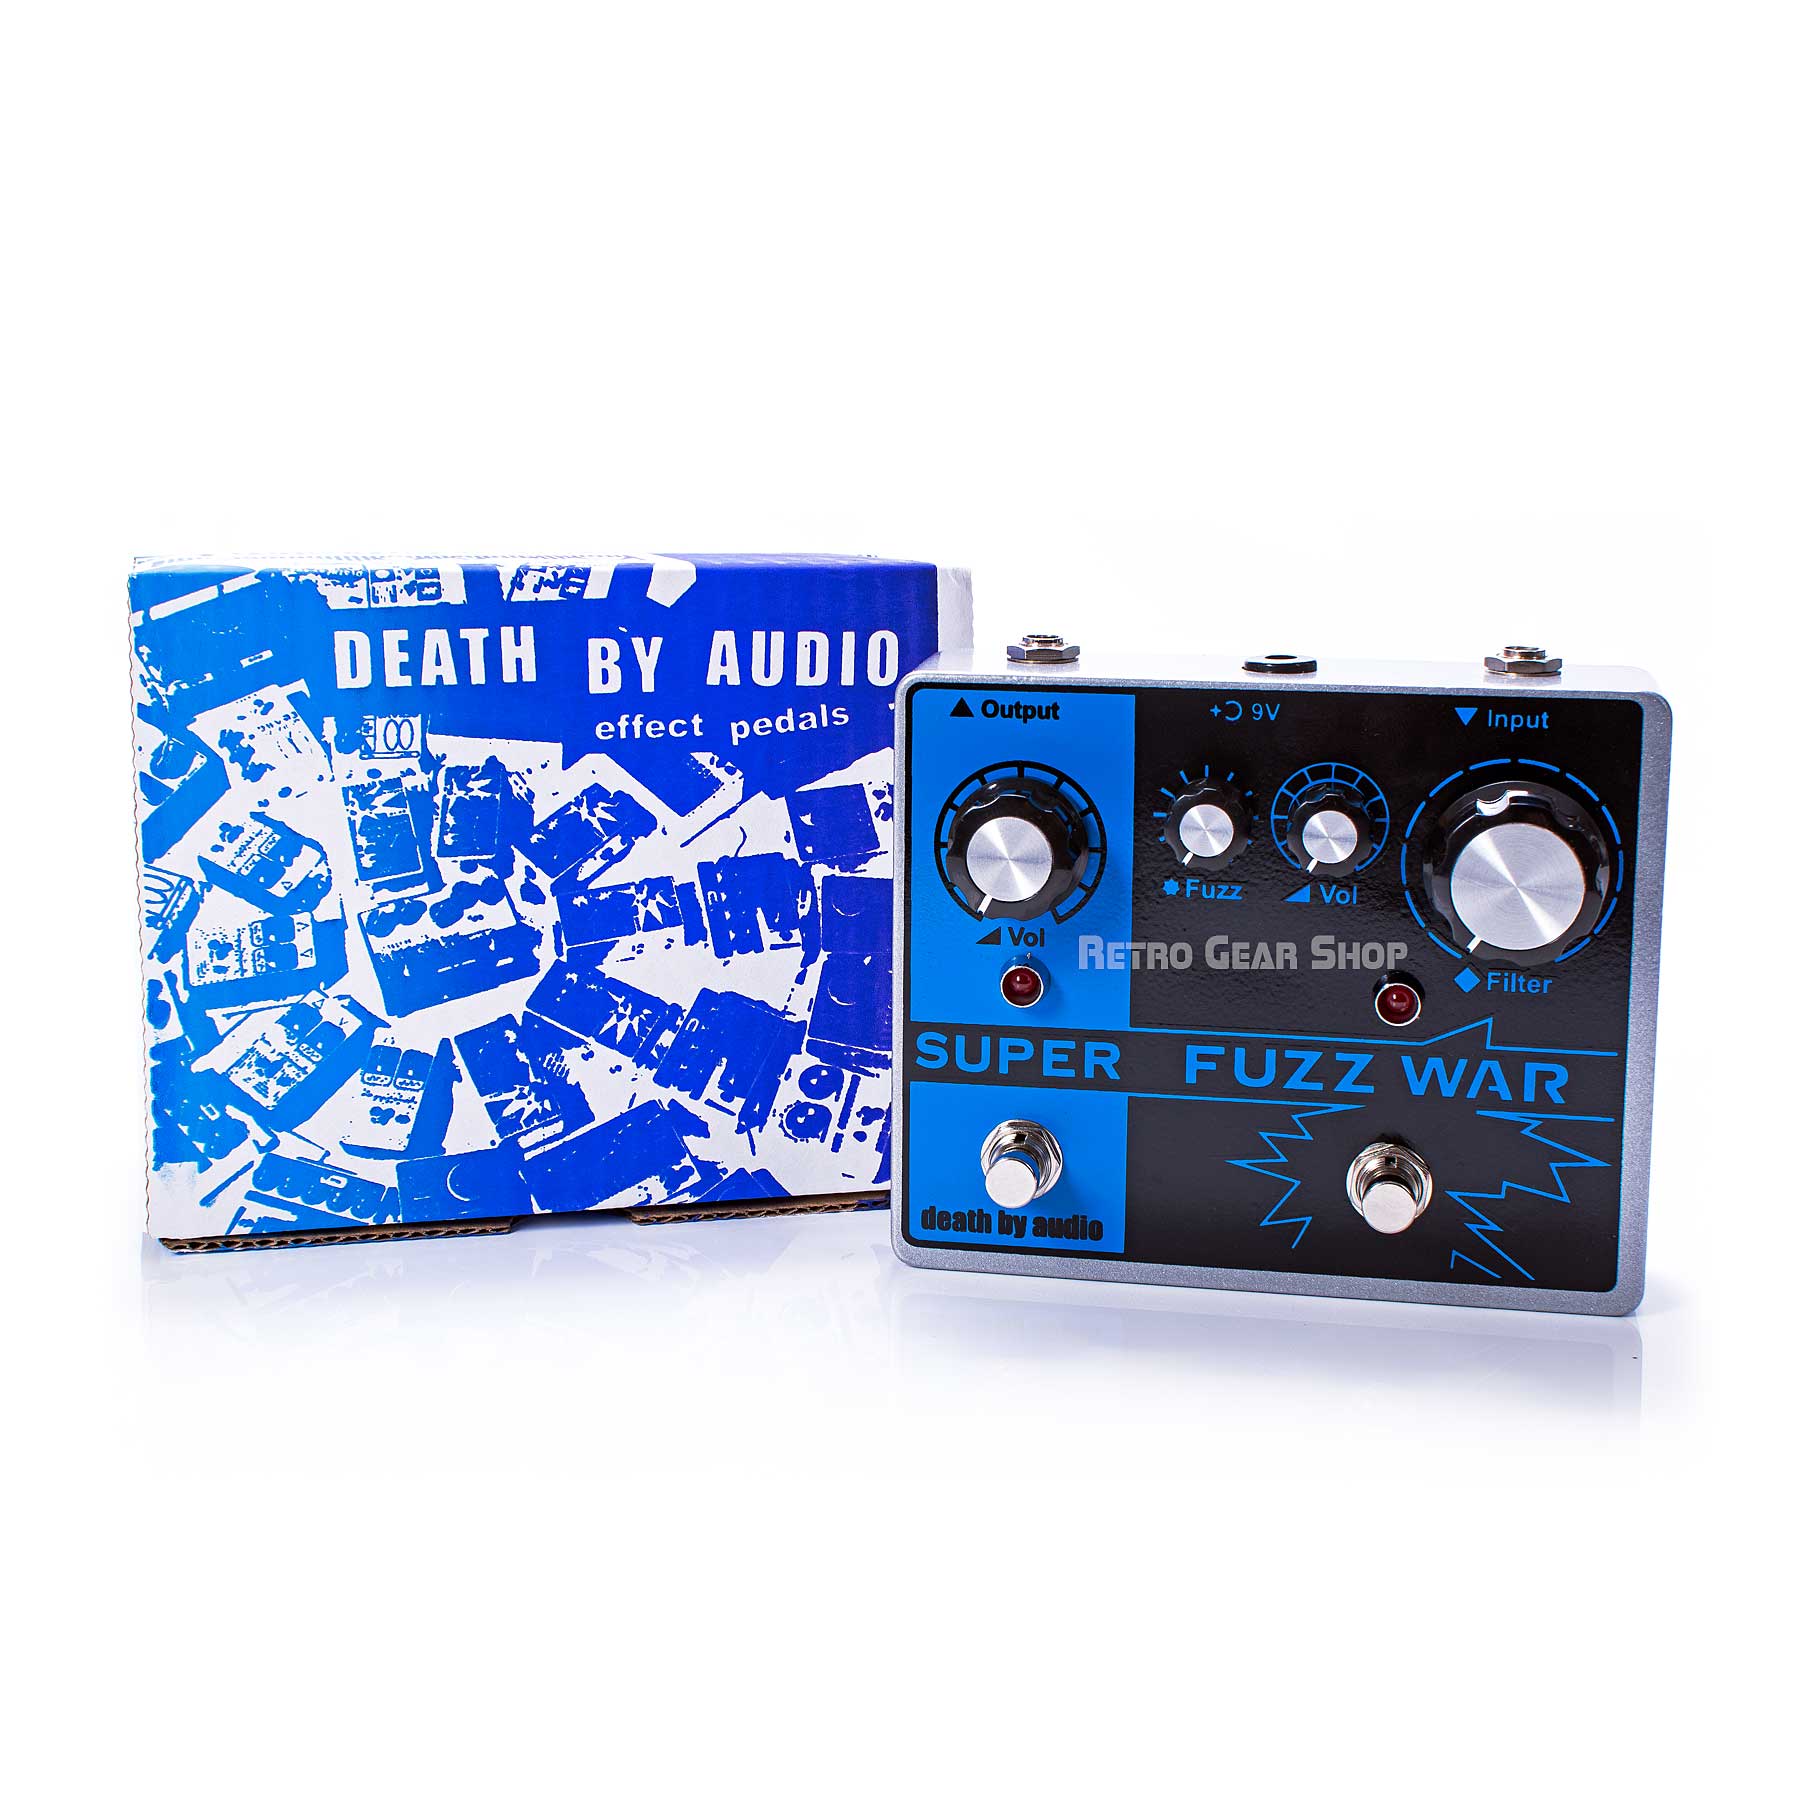 Death by Audio Super Fuzz War Box